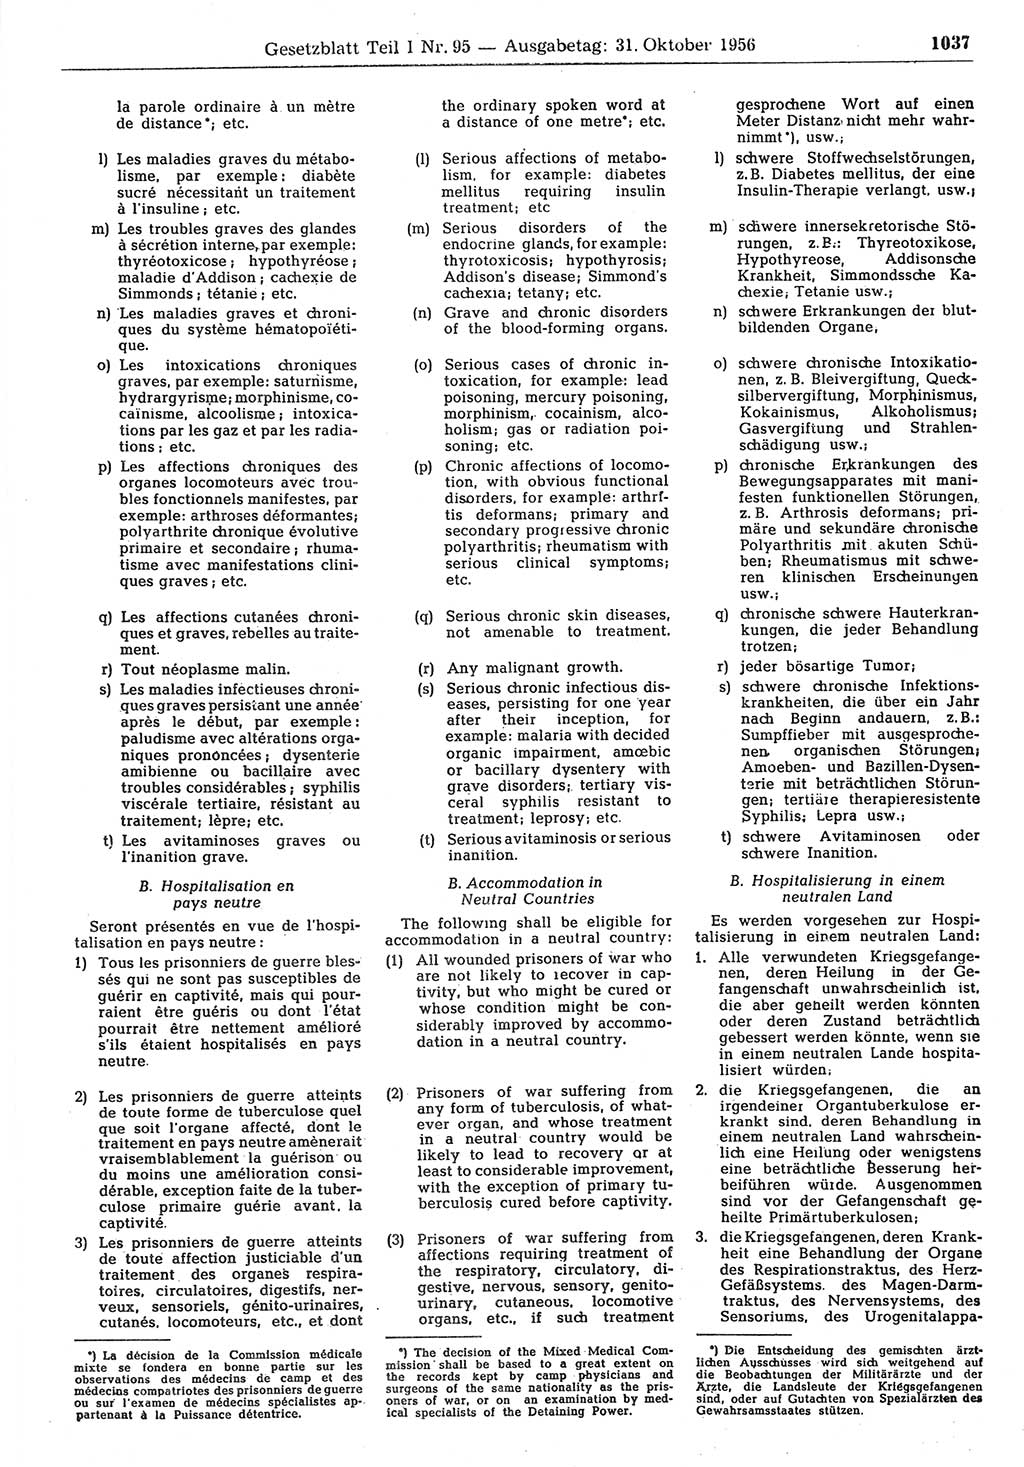 Gesetzblatt (GBl.) der Deutschen Demokratischen Republik (DDR) Teil Ⅰ 1956, Seite 1037 (GBl. DDR Ⅰ 1956, S. 1037)